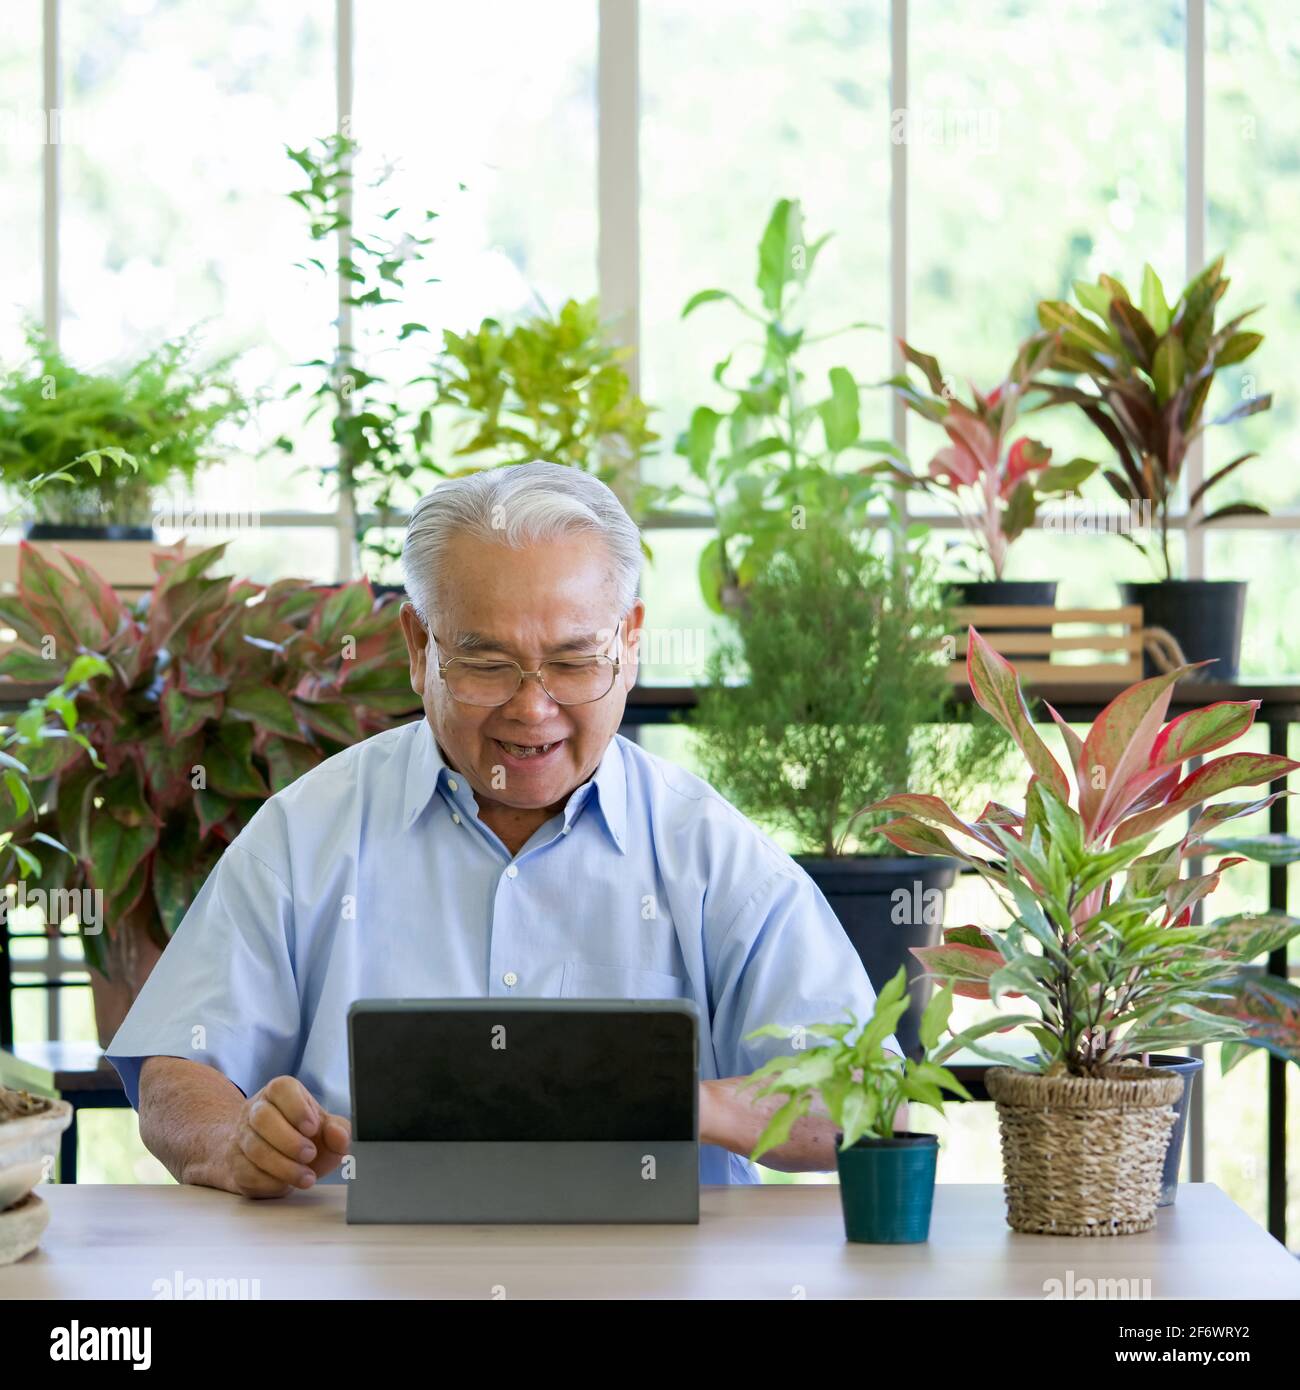 Ein alter Mann im Ruhestand nutzt die drahtlose Kommunikation über einen Tablet-Computer, um sich von einem Botaniker über die Gartenpflege in Innenräumen zu erkundigen. Die morgendliche Atmosphäre im gr Stockfoto